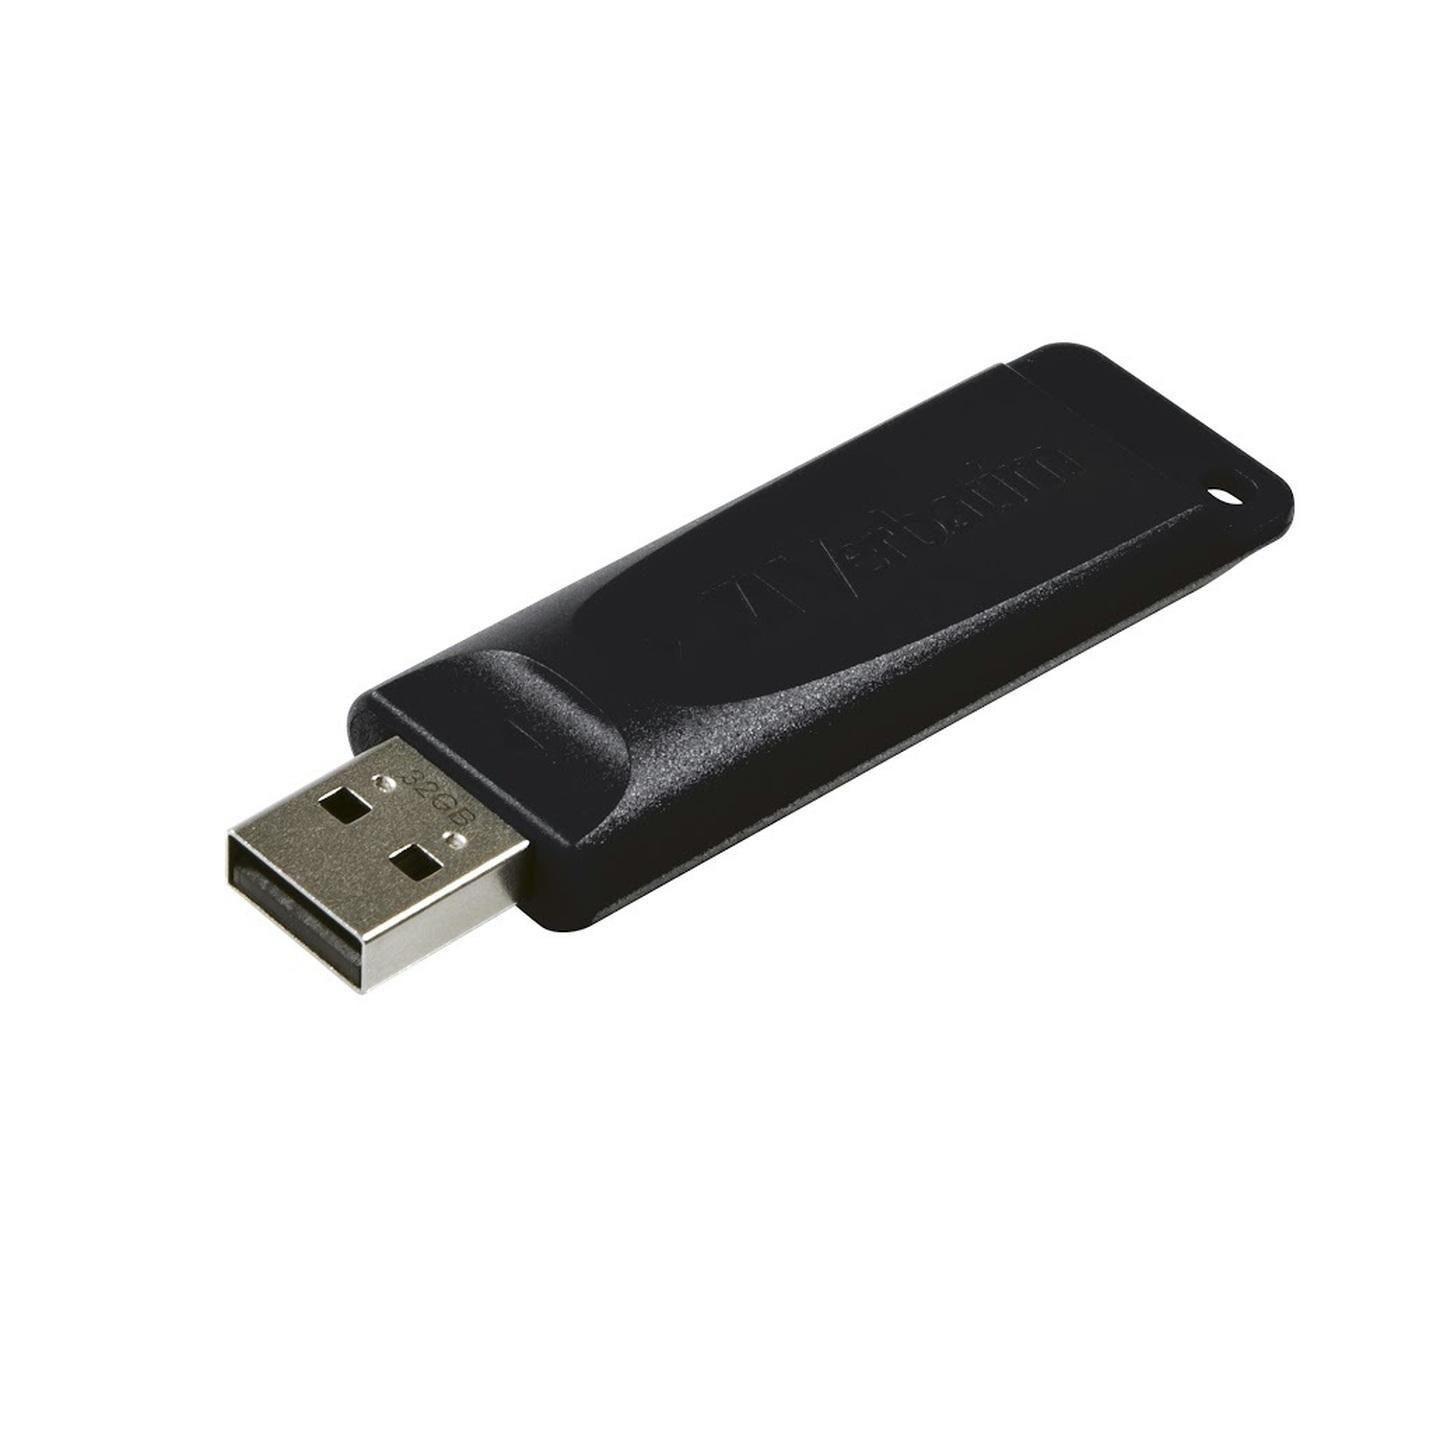 32GB USB Thumbdrive